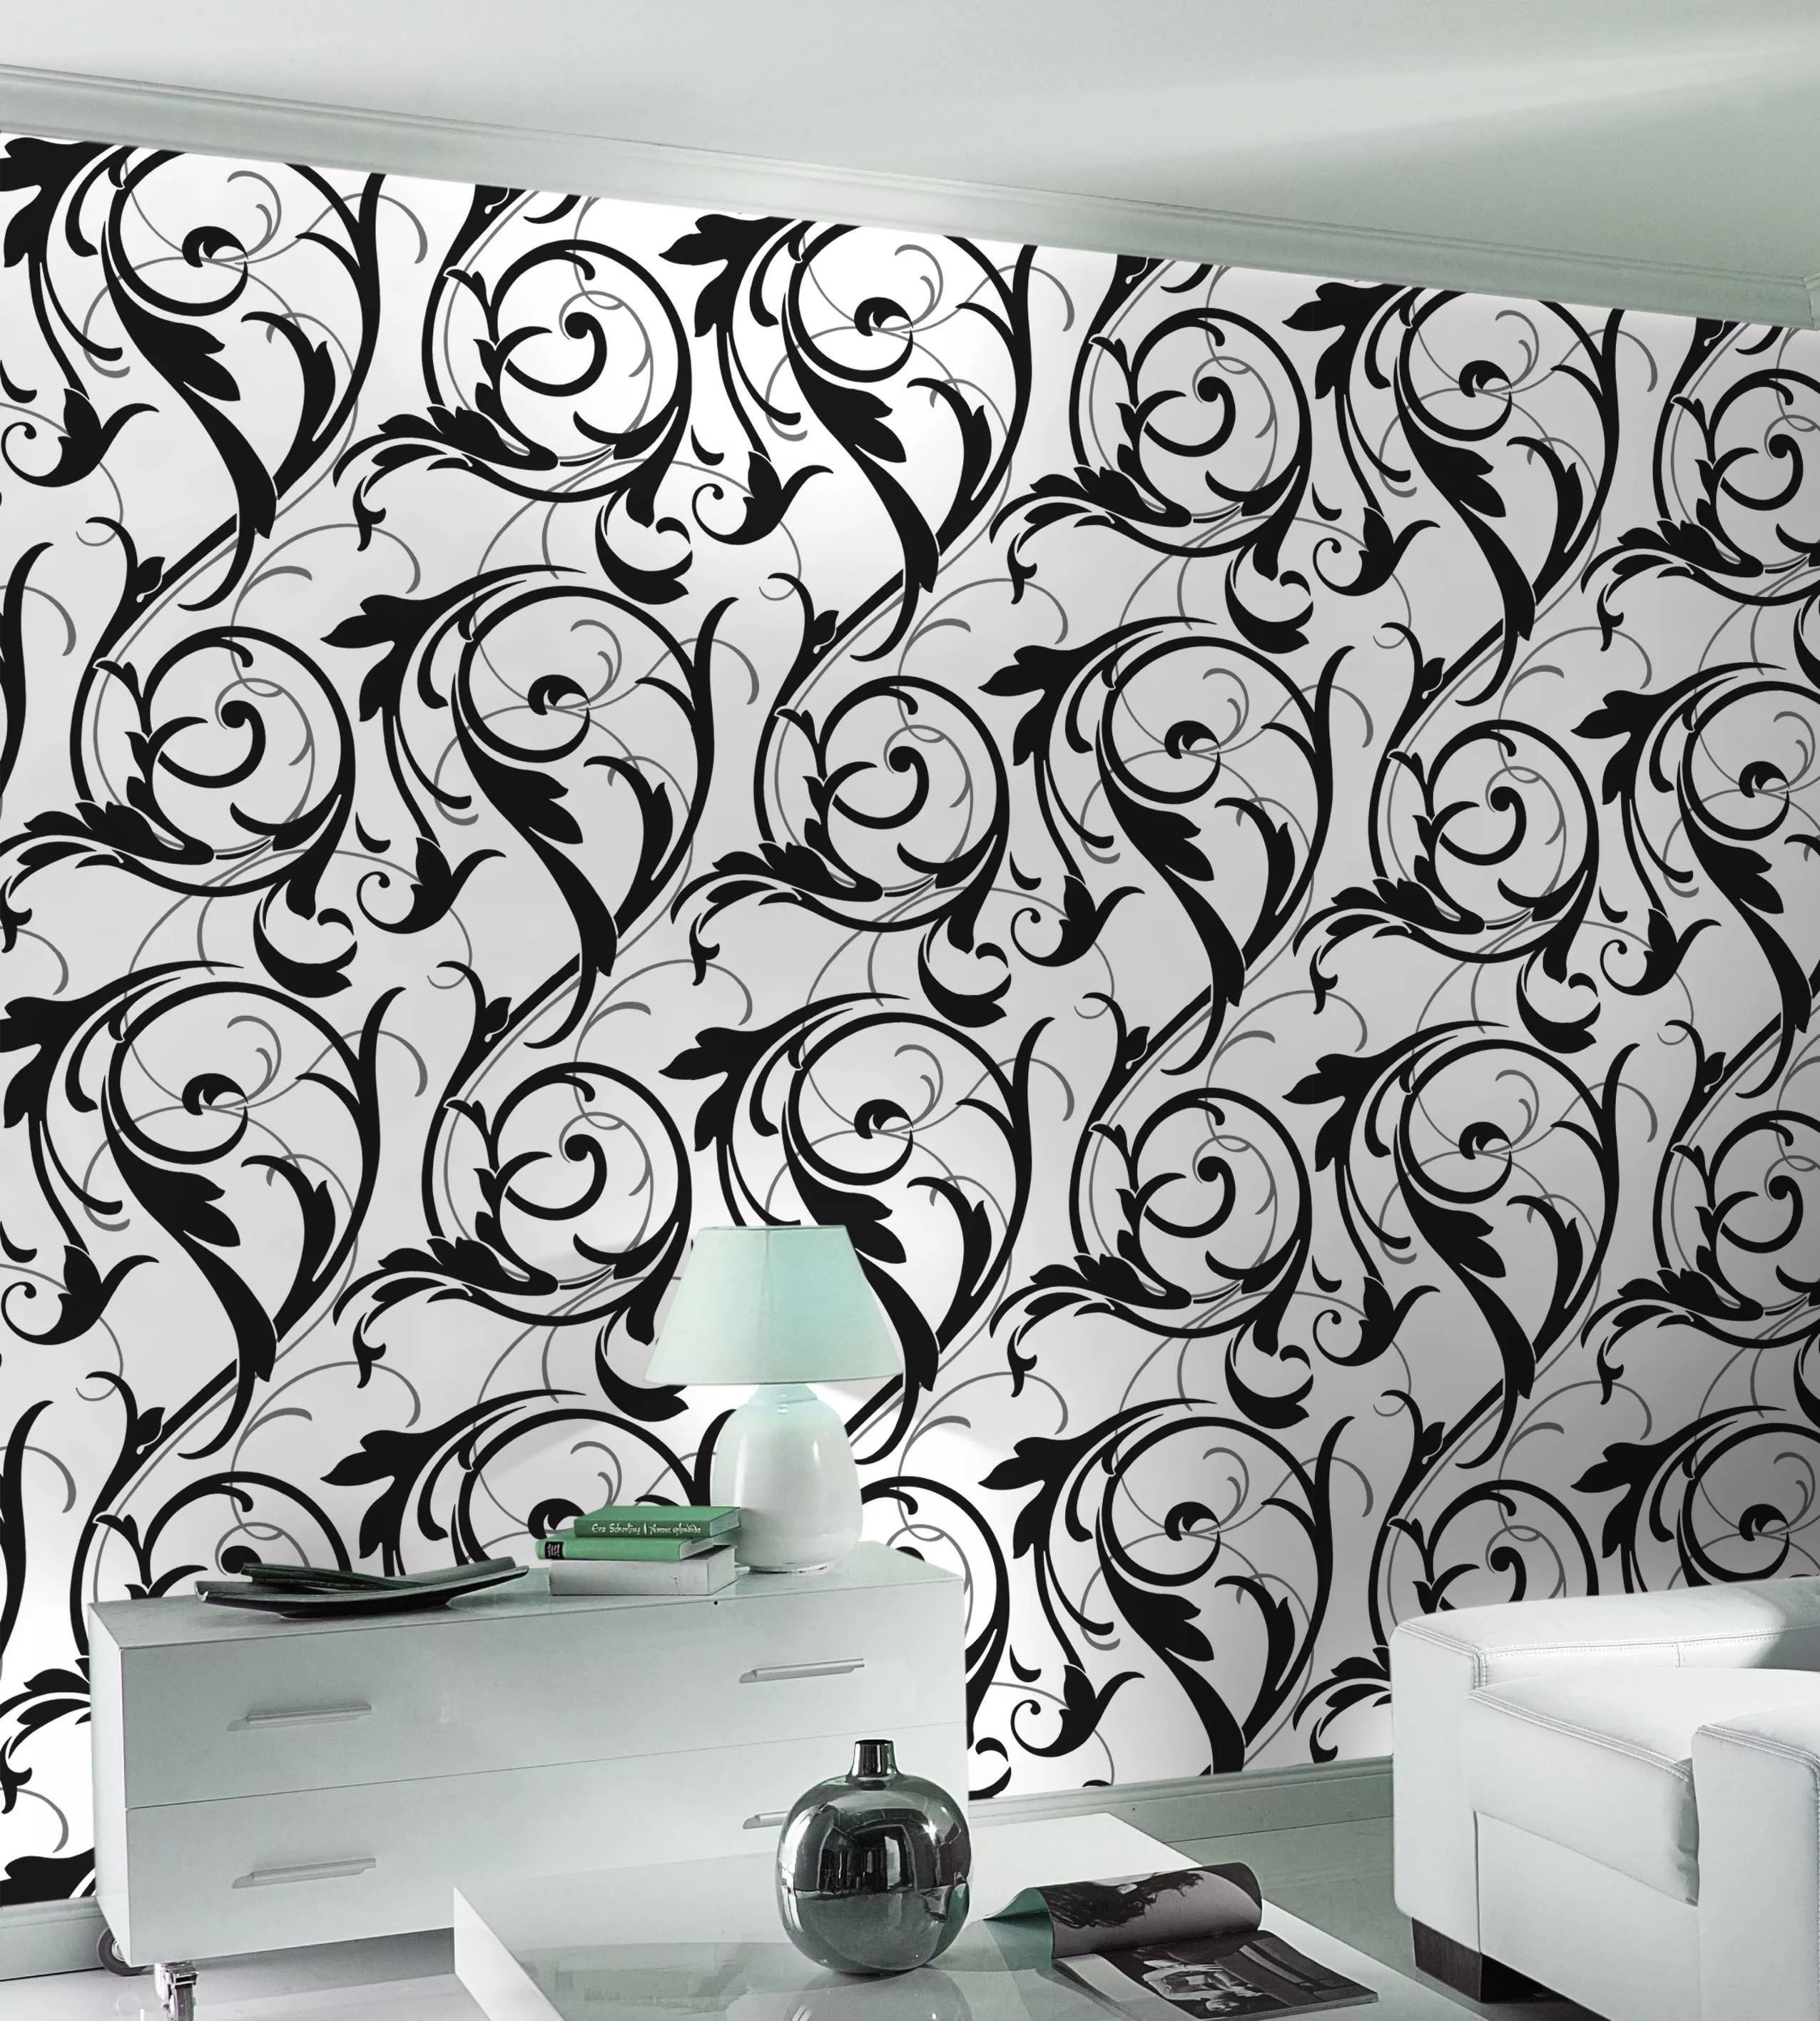 Обои на стену в комнату. Шелкография Леруа Мерлен. Широкие обои для стен. Обои с крупным рисунком. Обои настенные черно белые.